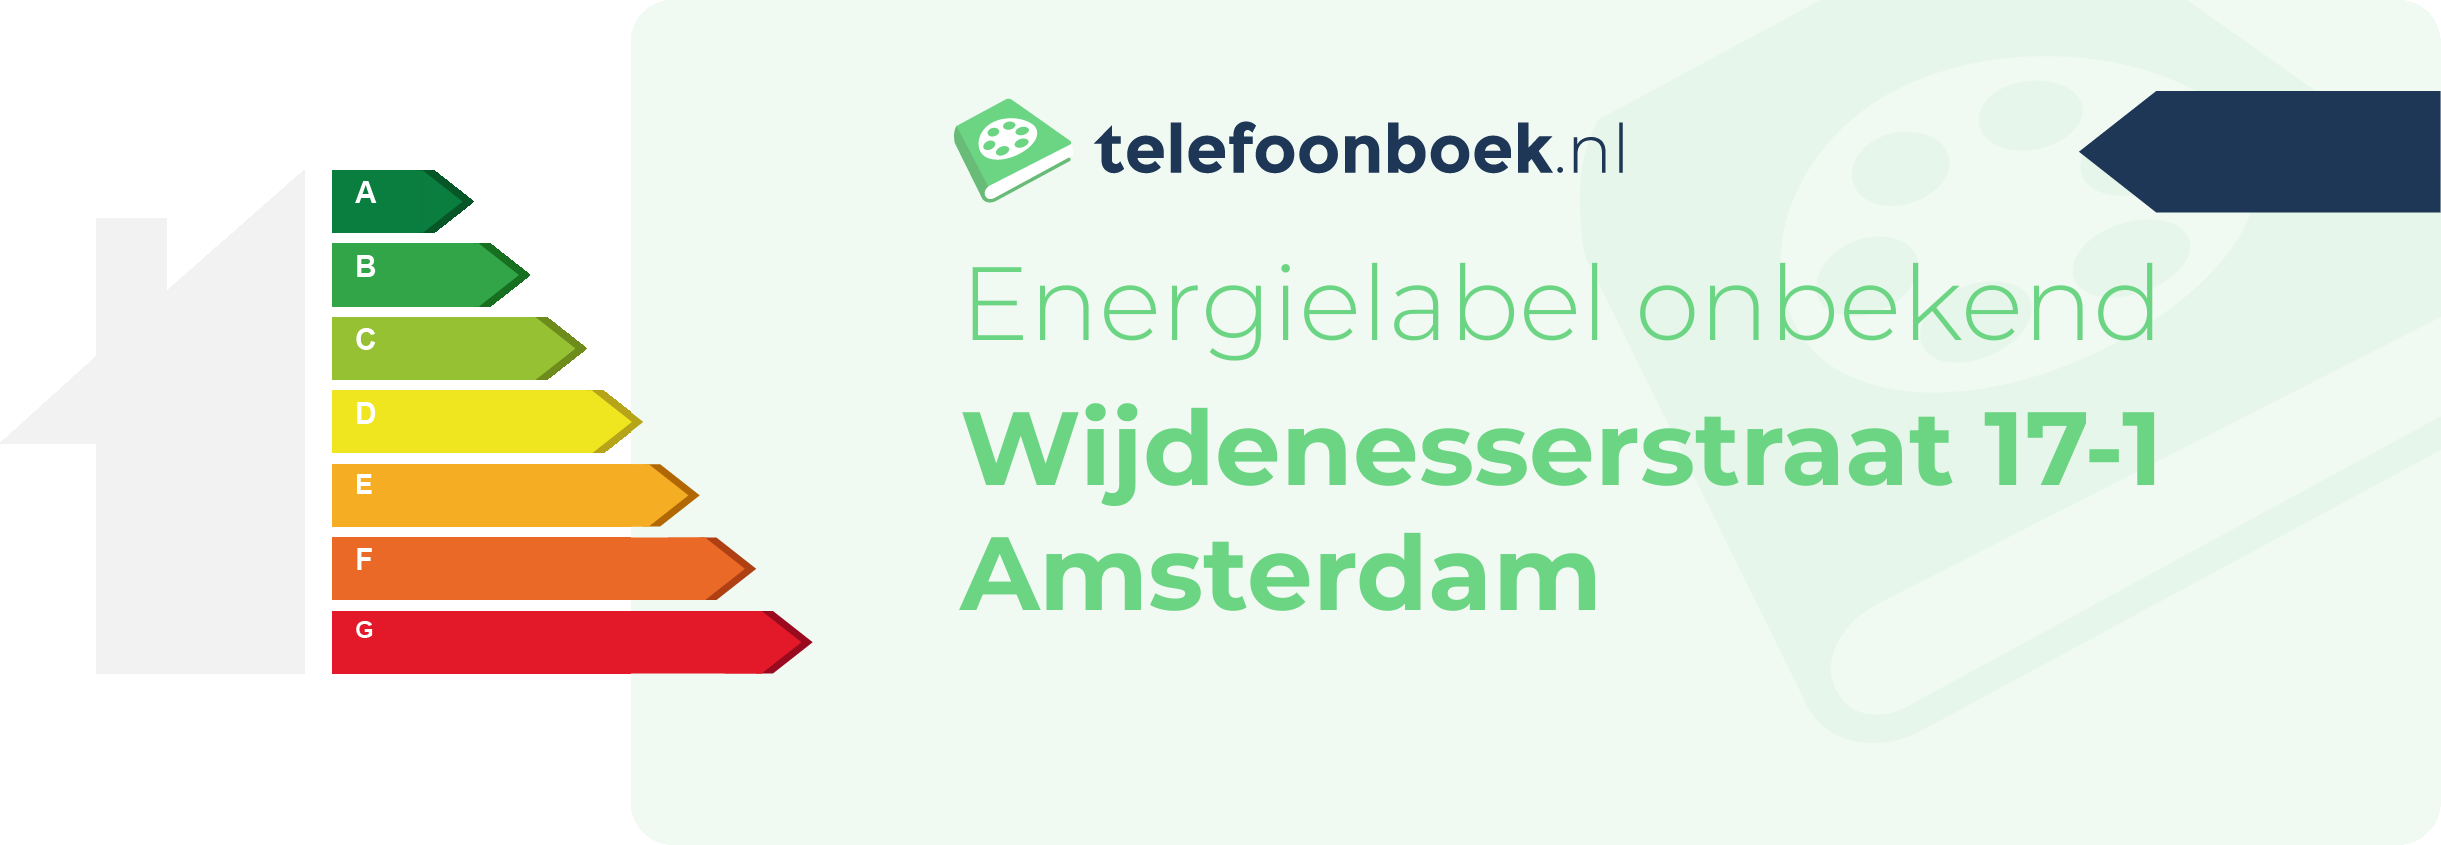 Energielabel Wijdenesserstraat 17-1 Amsterdam